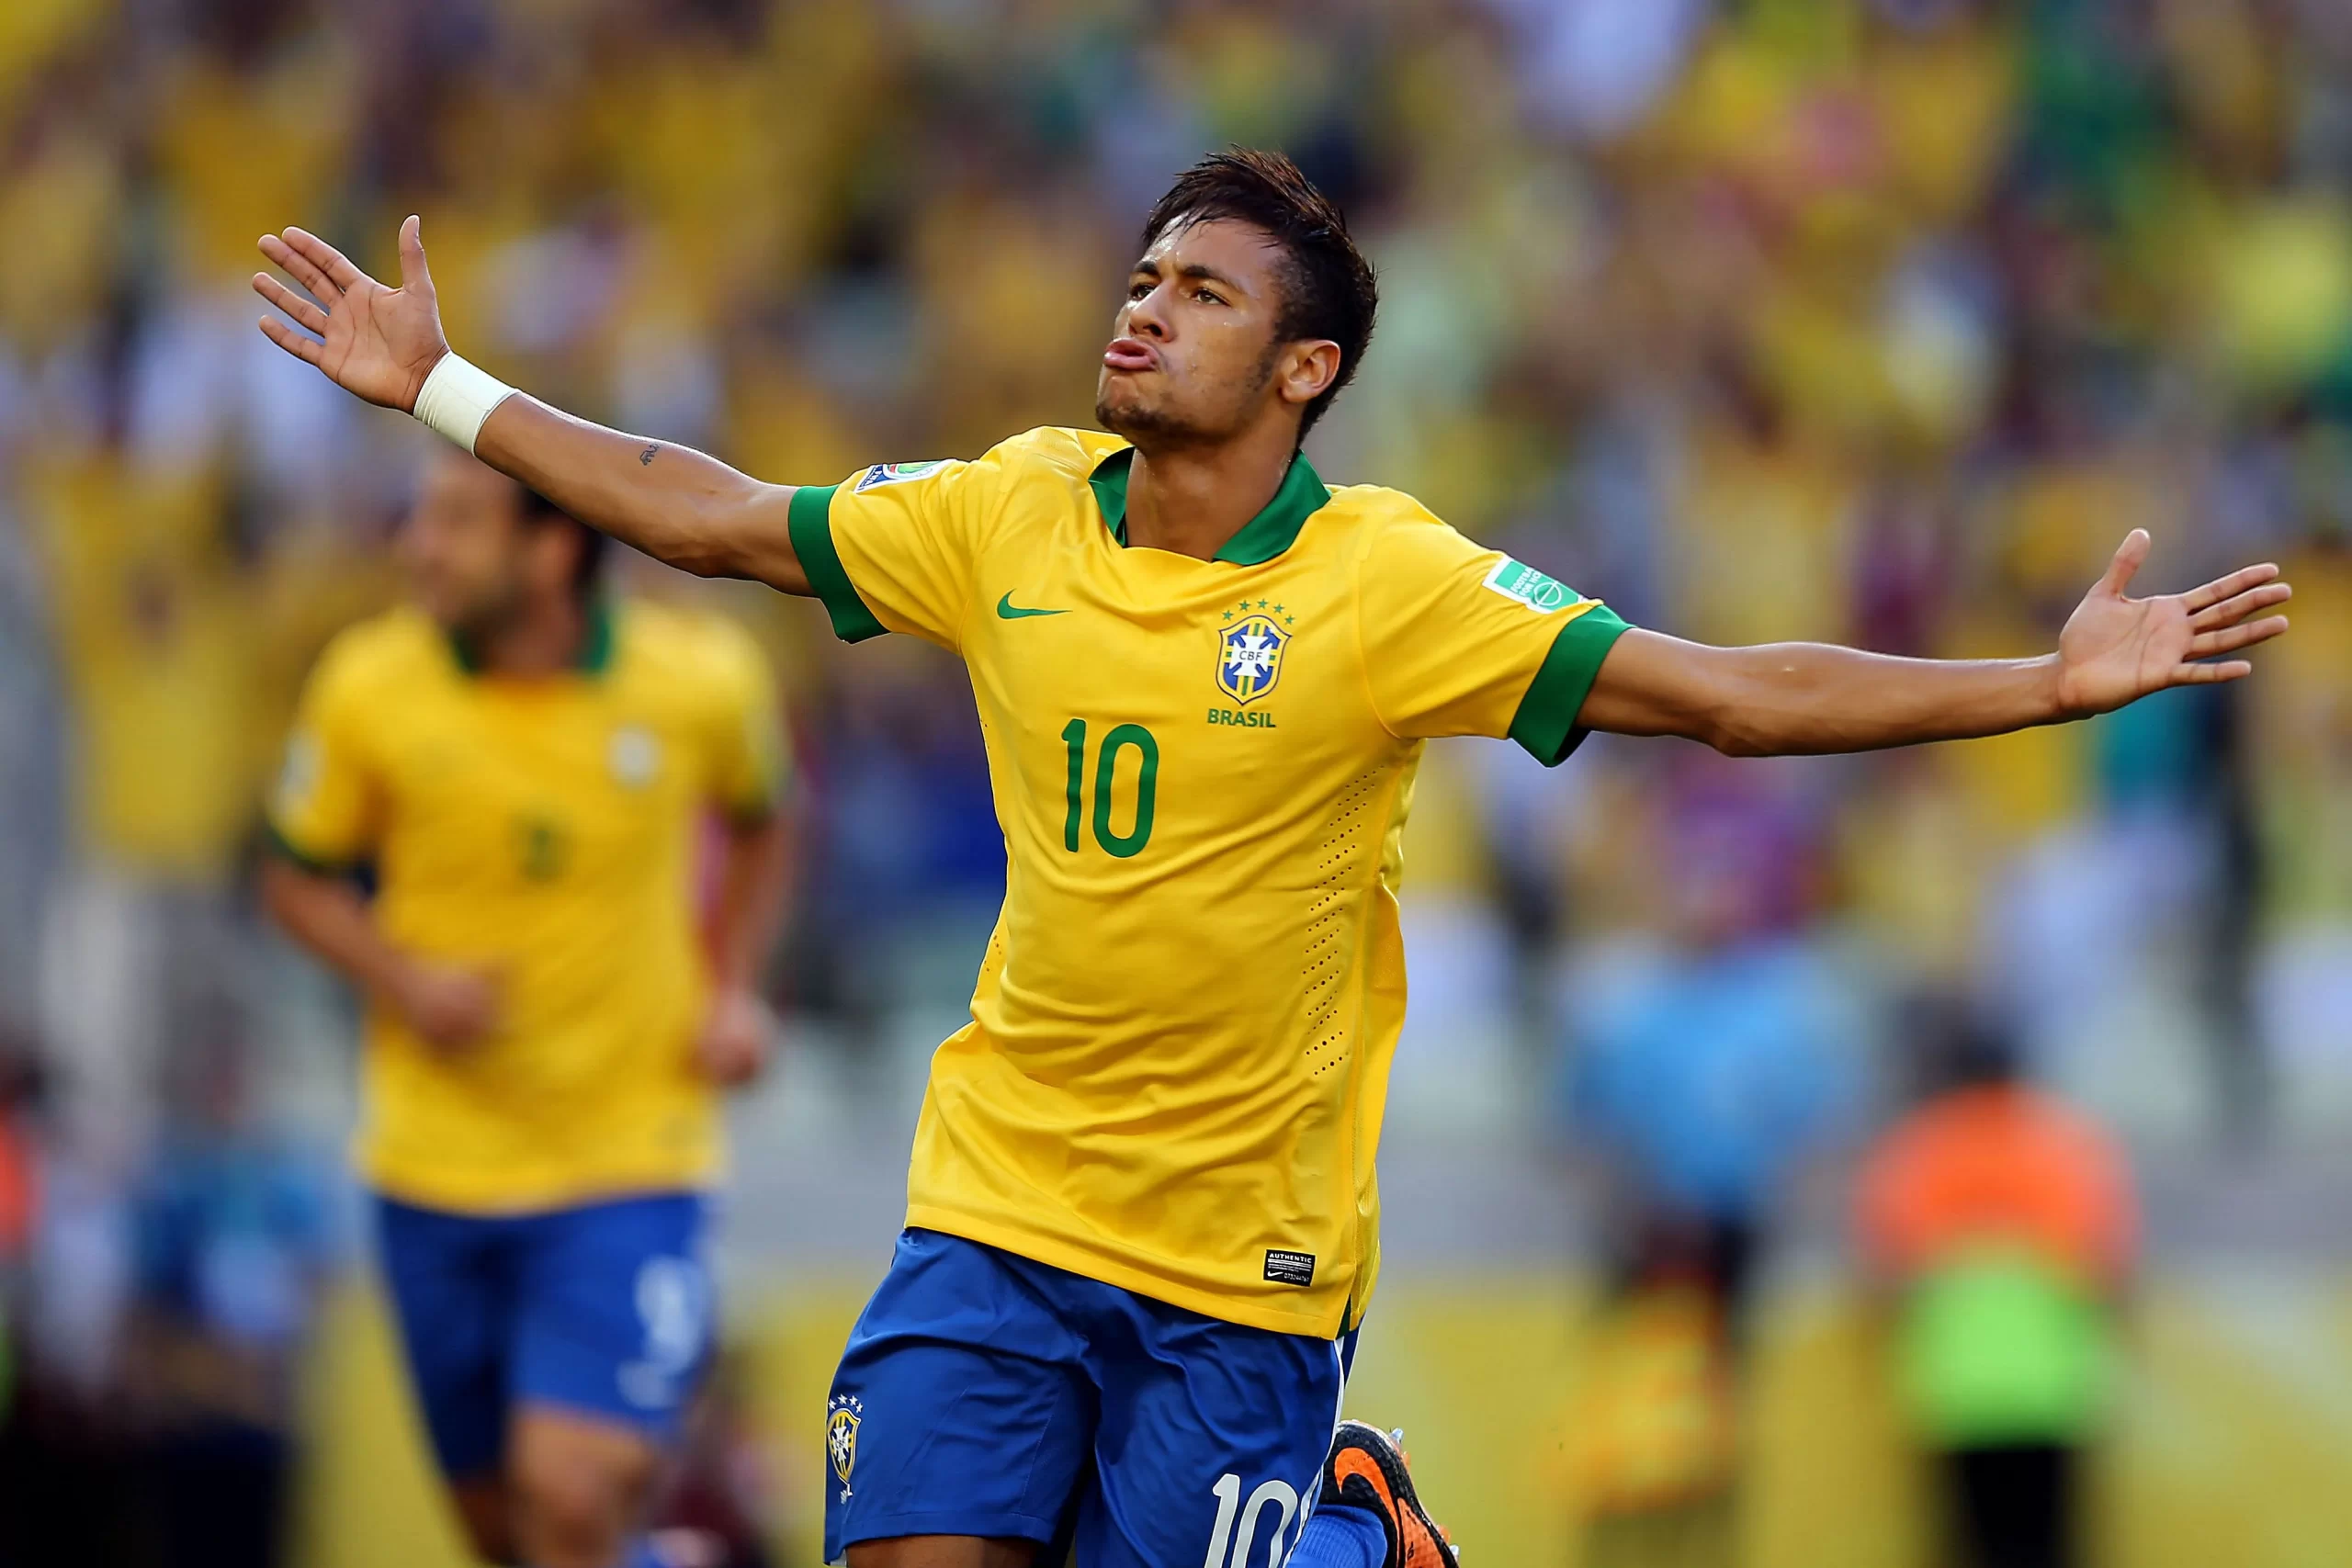 Pelajaran Hidup dari Kisah Sukses Neymar Jr.